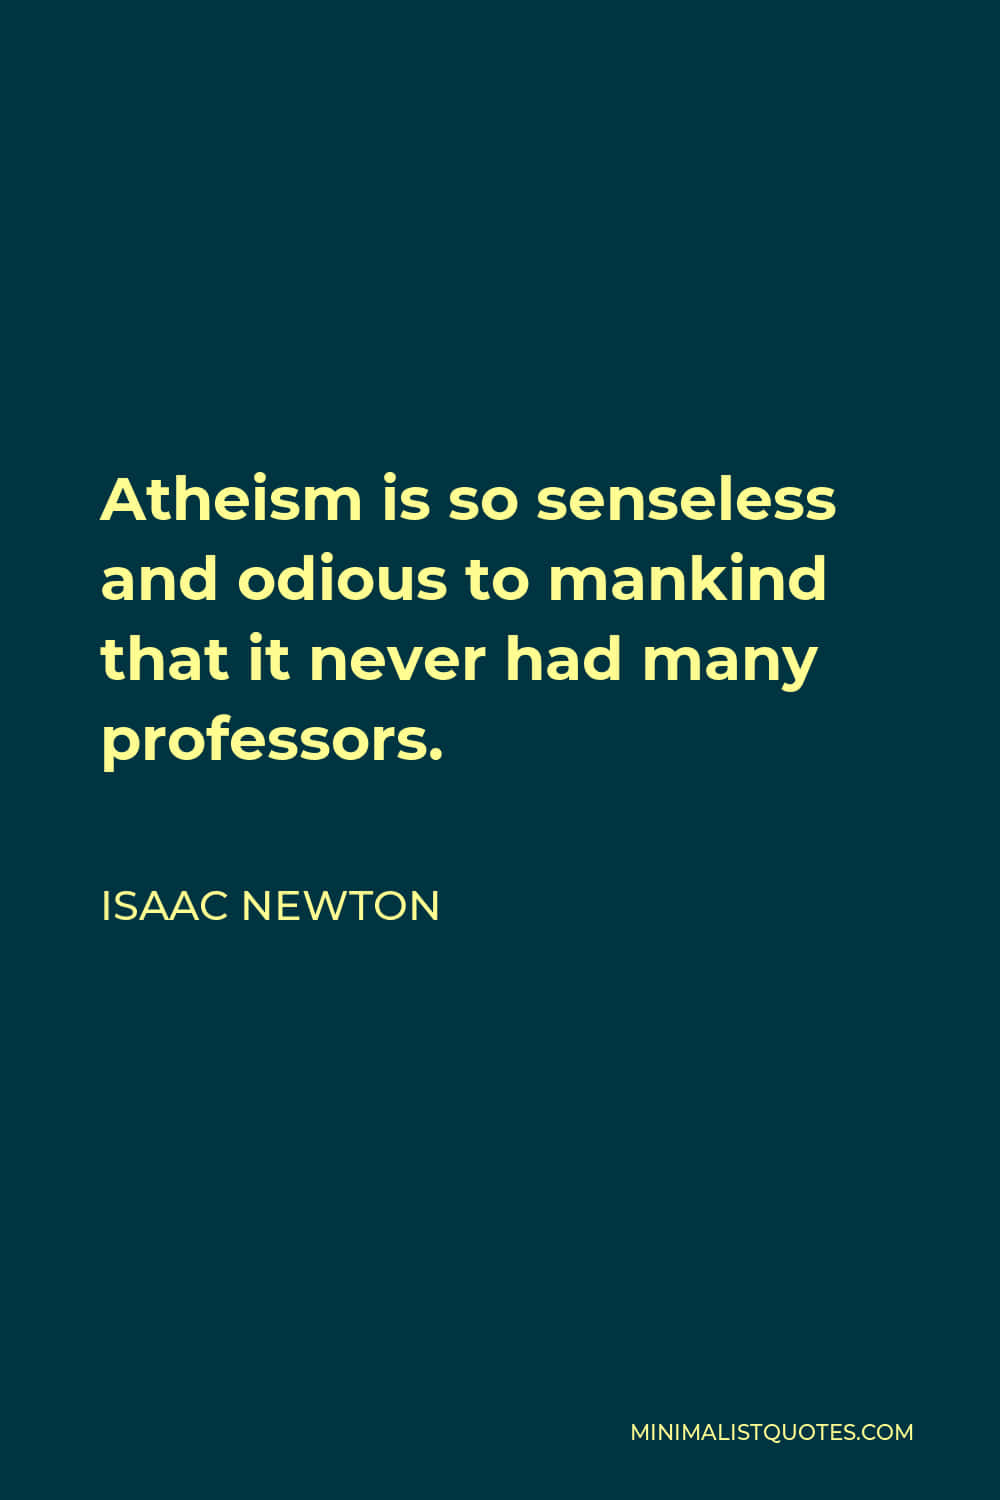 Citaodiosa De Isaac Newton Sobre El Ateísmo Relacionado Con Fondos De Pantalla De Computadora O Móvil. Fondo de pantalla